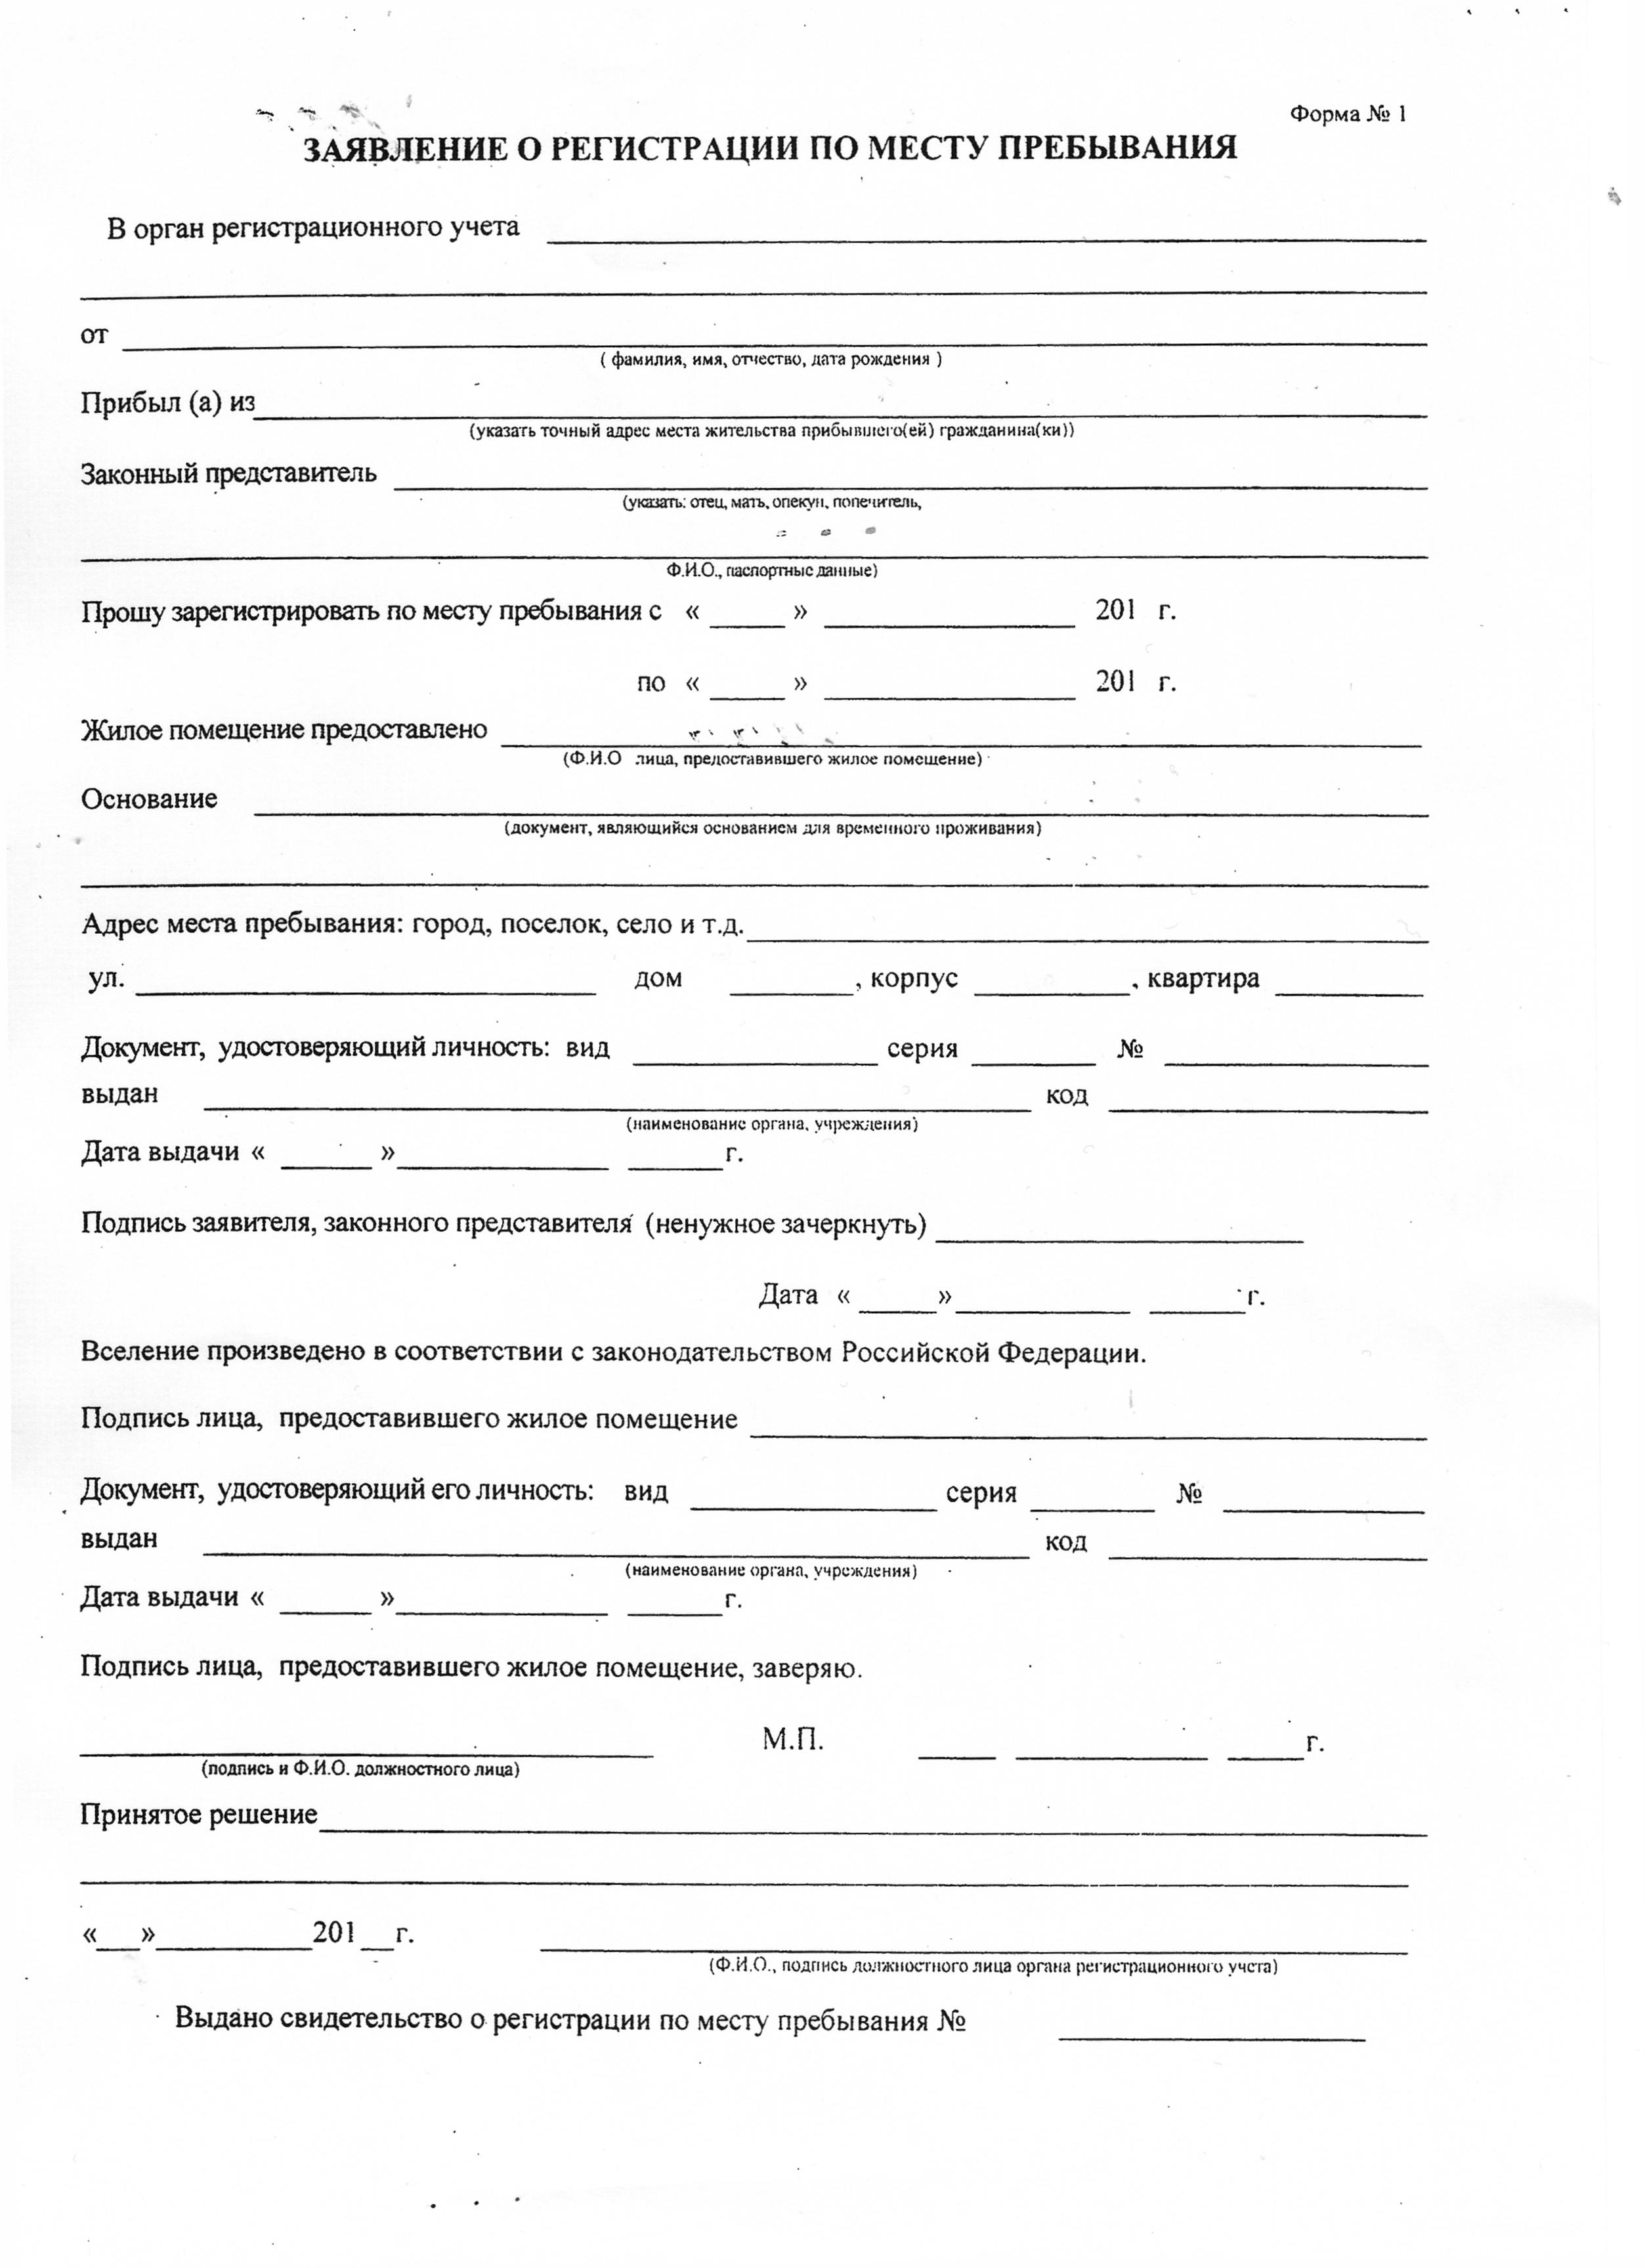 Свидетельство о регистрации по месту пребывания: бланк справки и образец заполнения формы №3 на временную прописку